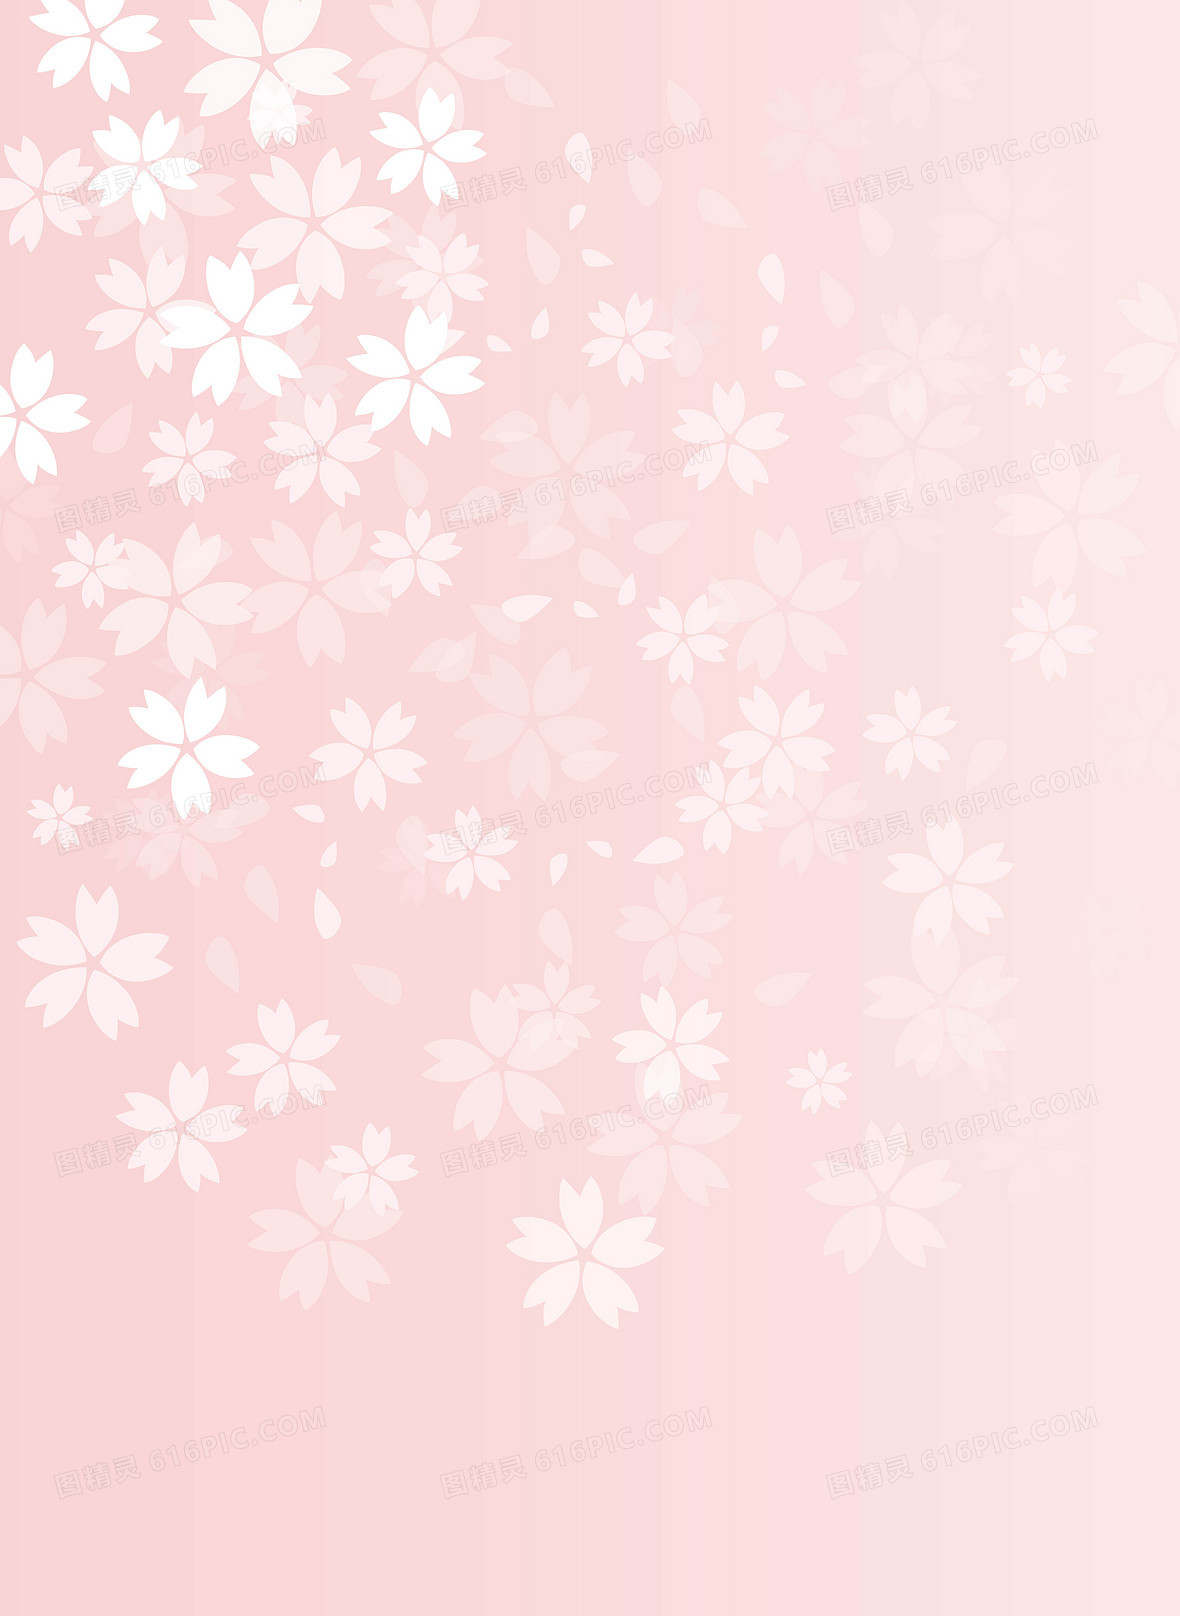 粉红色背景图片下载 免费高清粉红色背景设计素材 图精灵